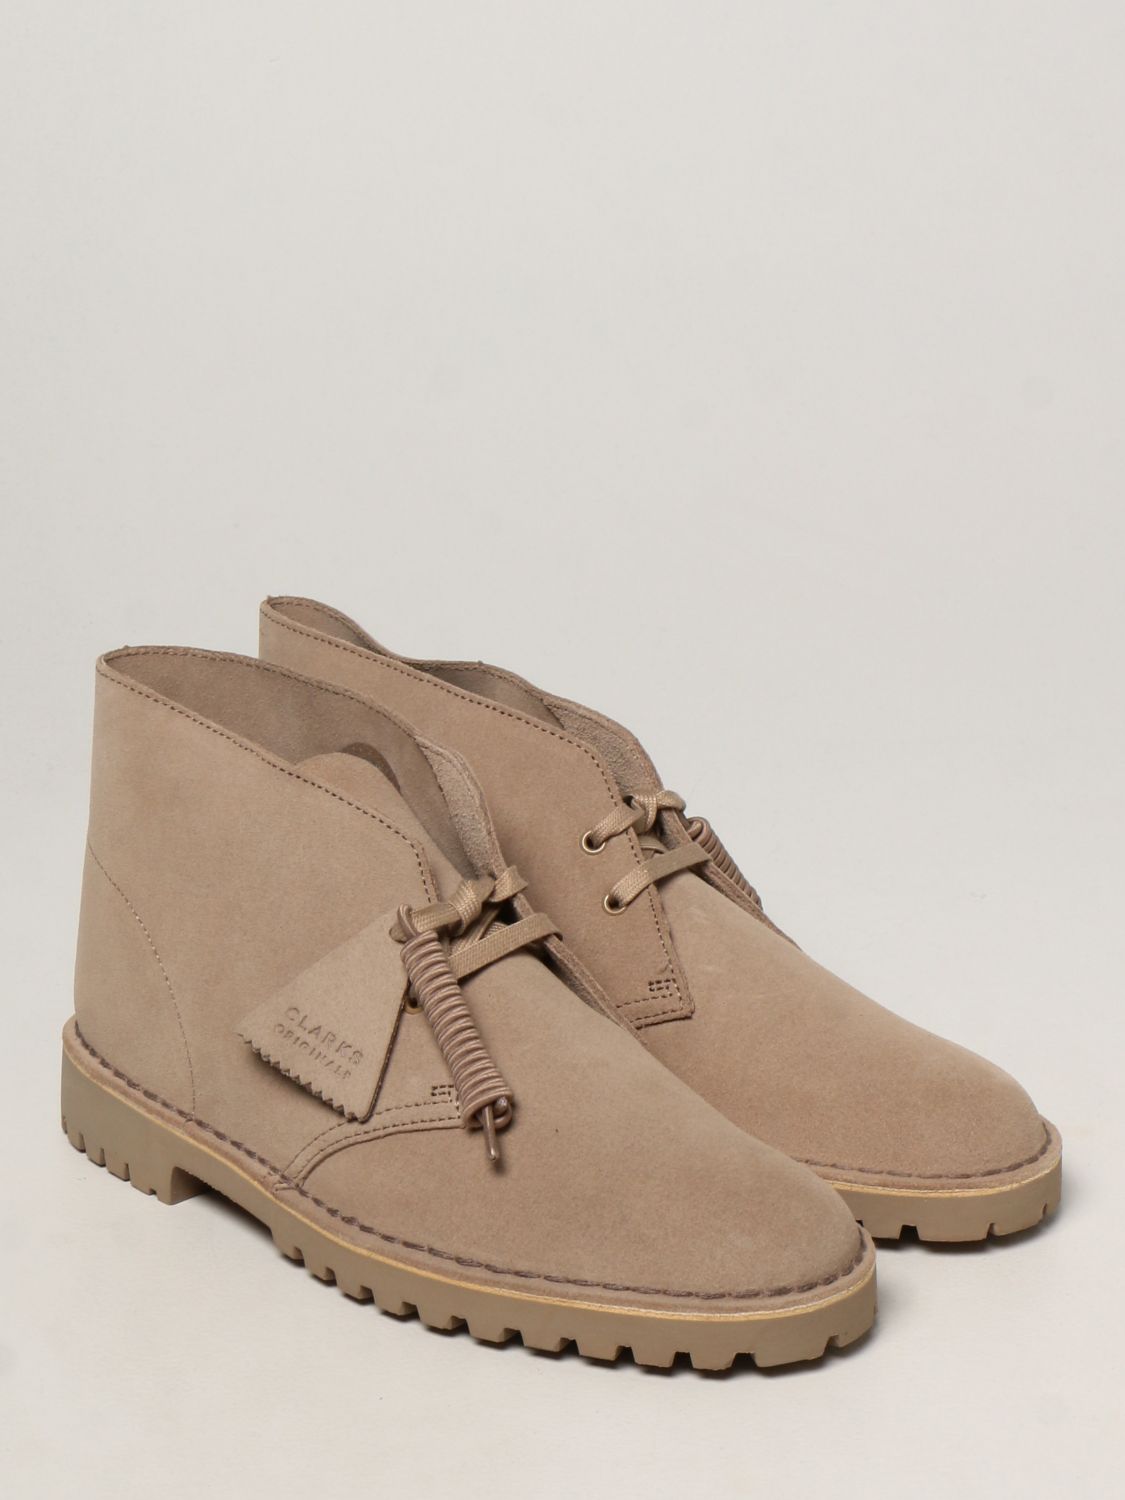 Desert boots Clarks: Shoes men Clarks Originals yellow cream 2